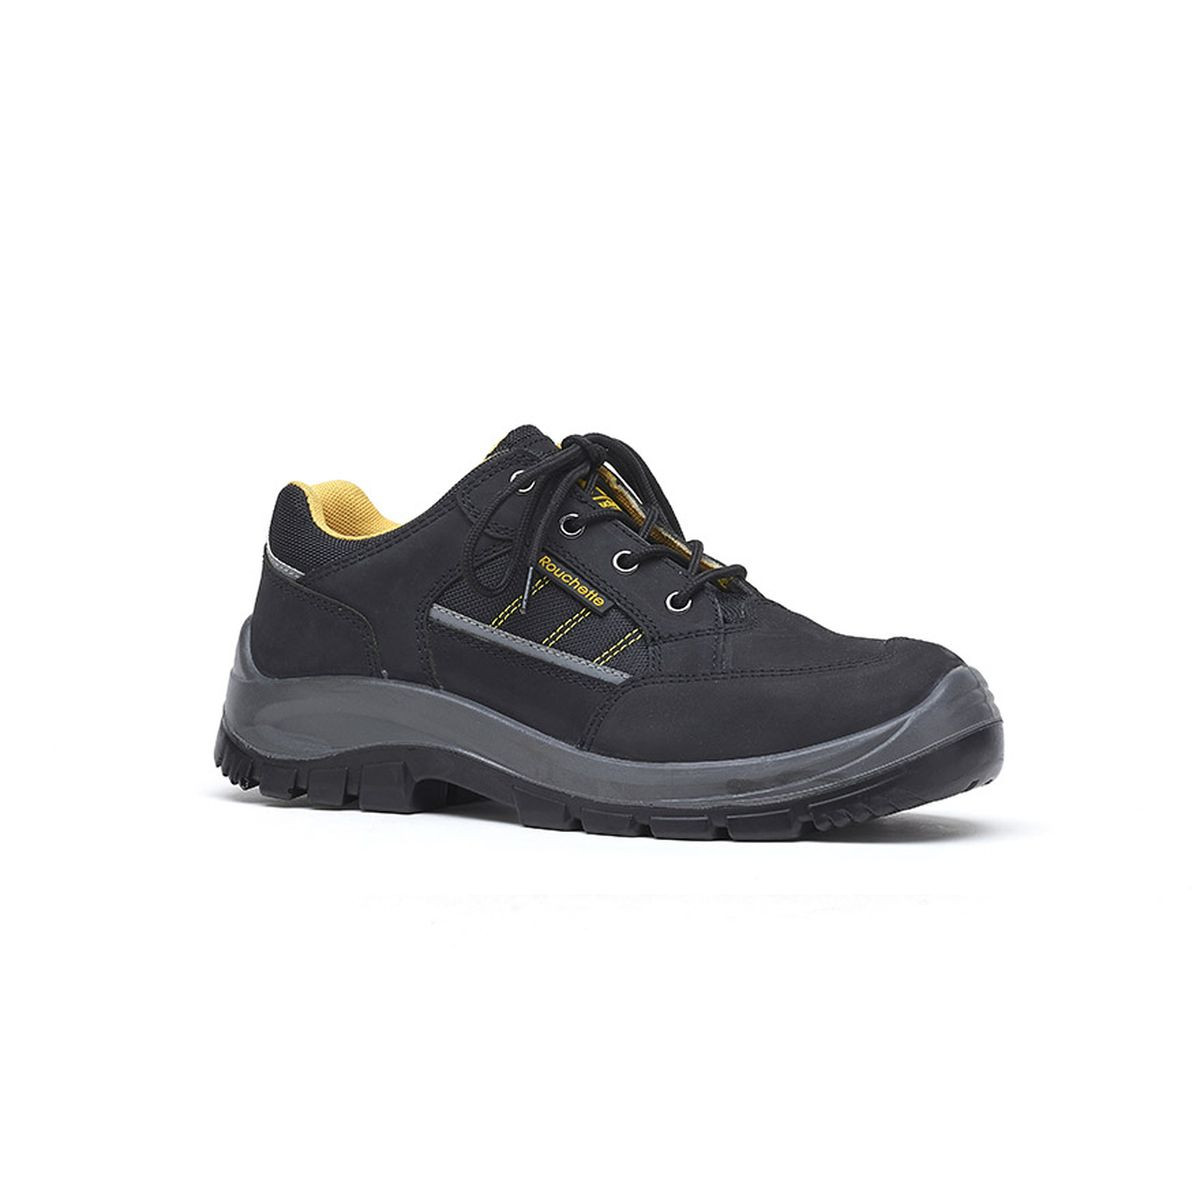 Chaussures de sécurité BOSTON noir et jaune T42